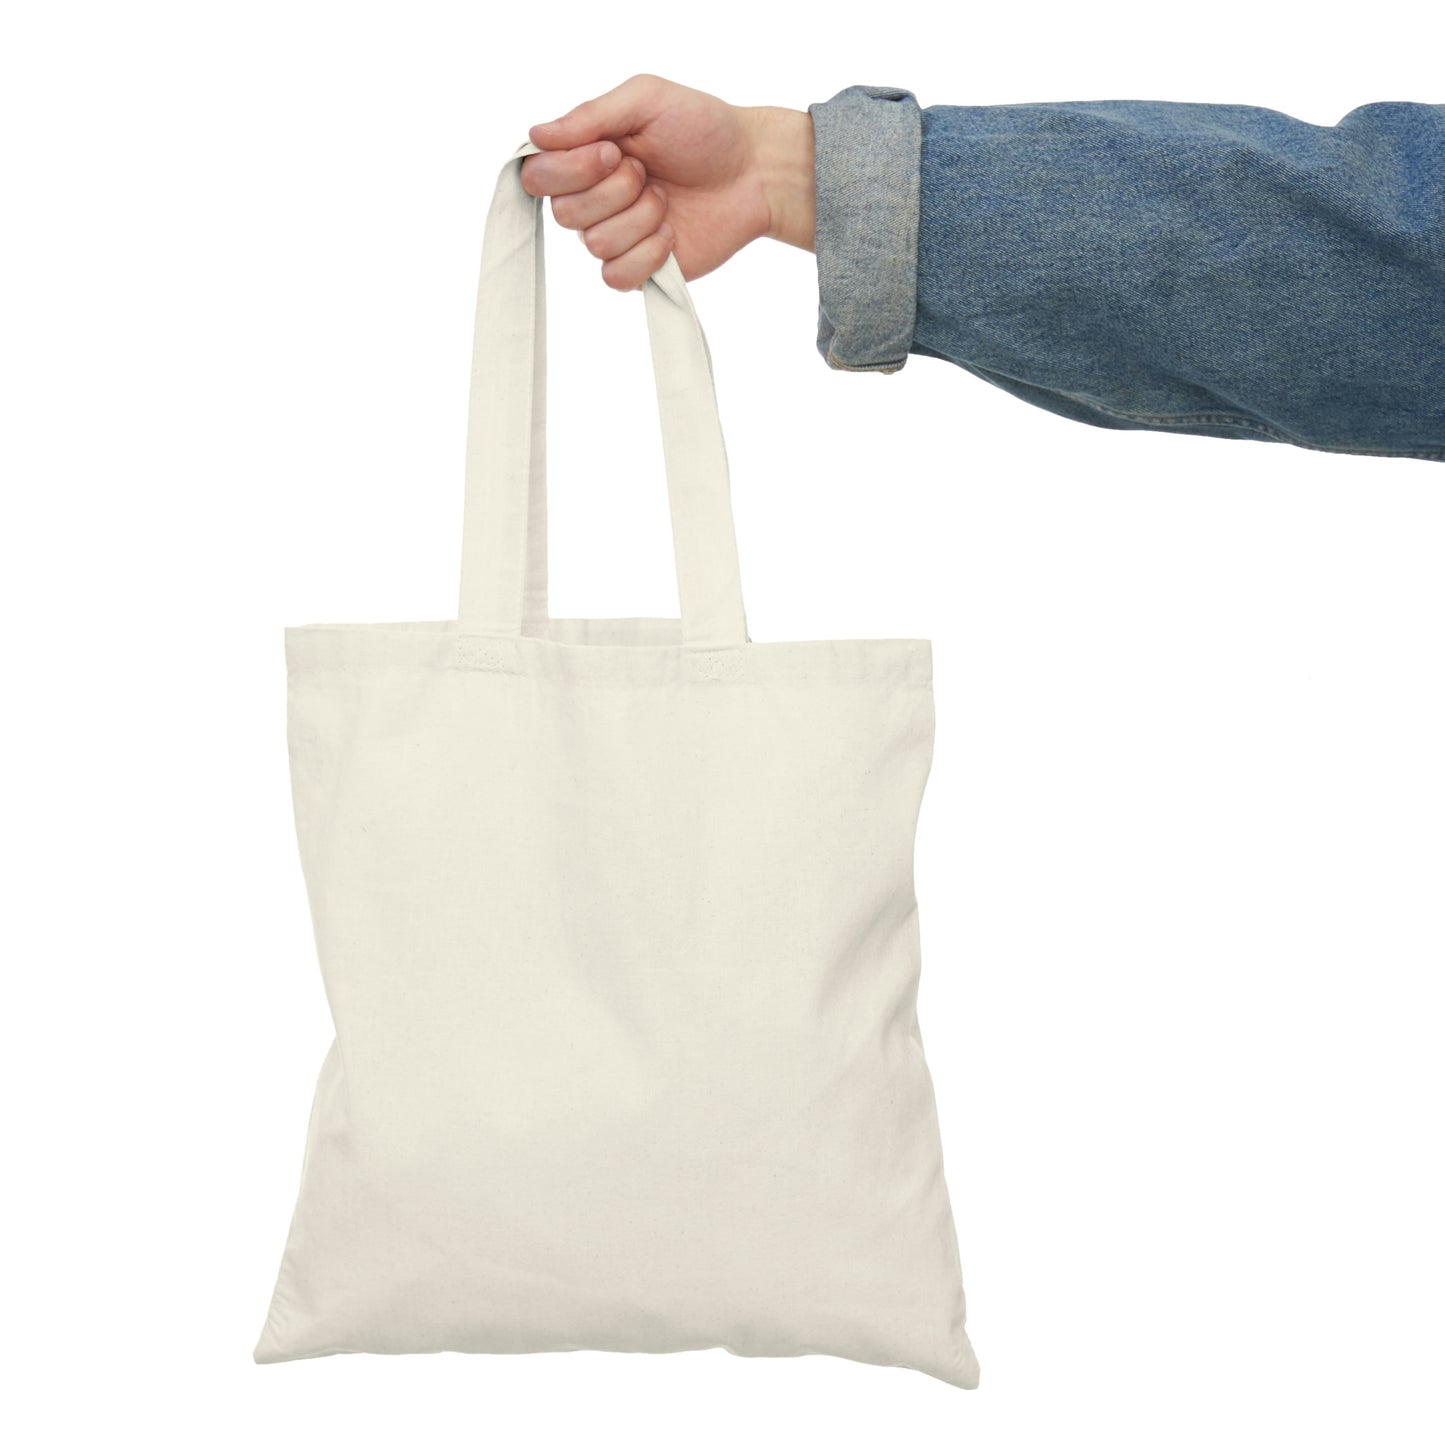 Student Affairs - Natural Tote Bag